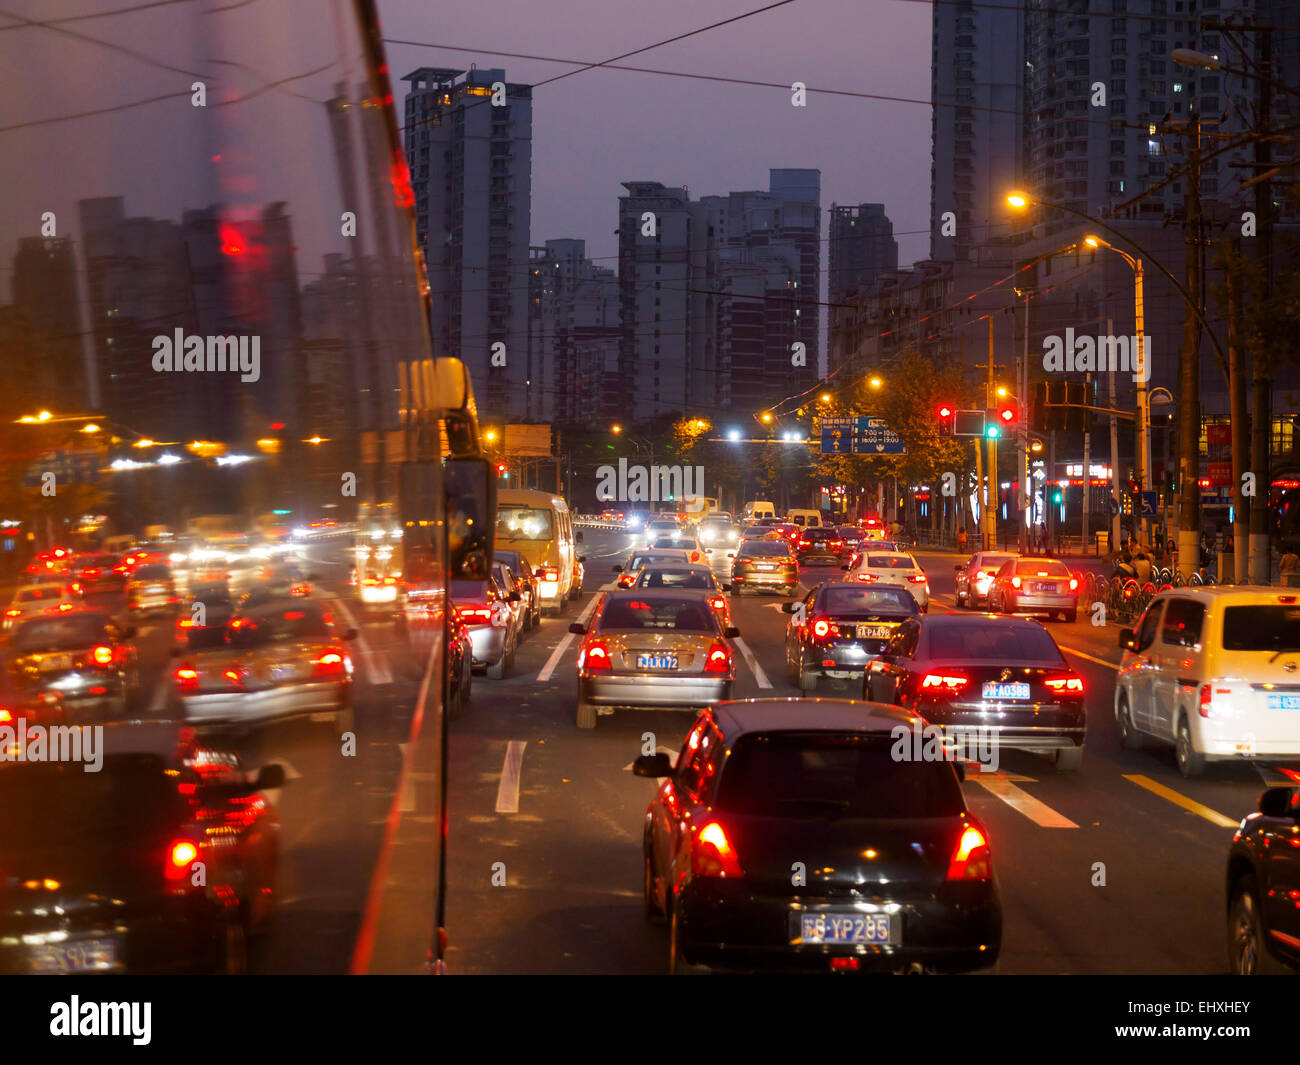 Traffic jam at night in Shanghai, China Stock Photo